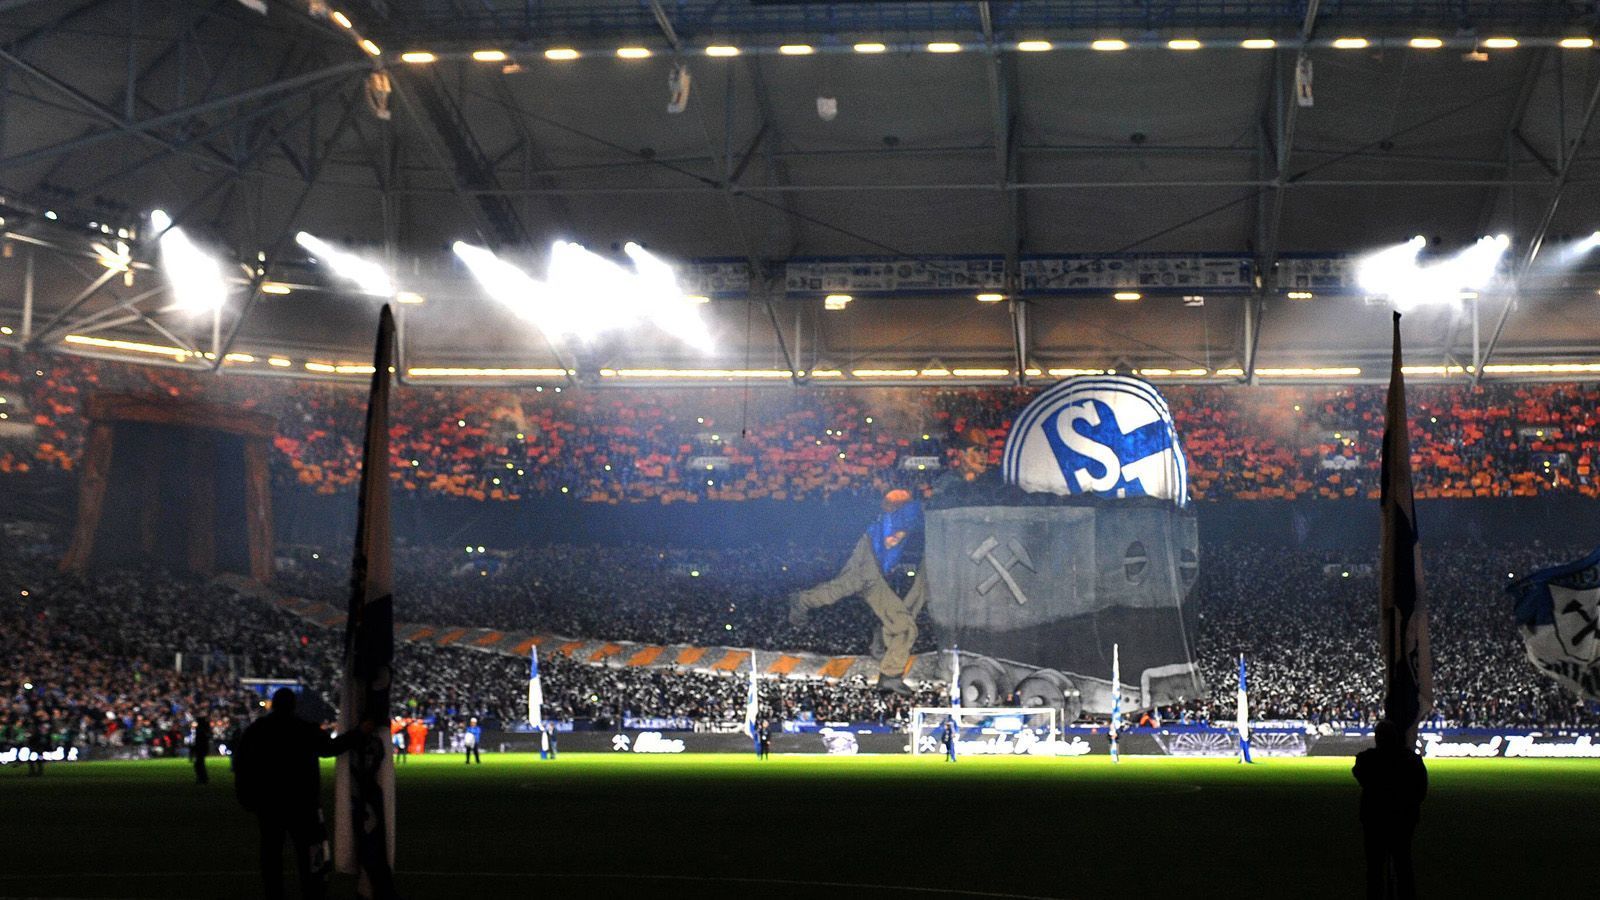 
                <strong>Schalke 04</strong><br>
                Hier die Choreographie aus einem anderen Winkel.
              